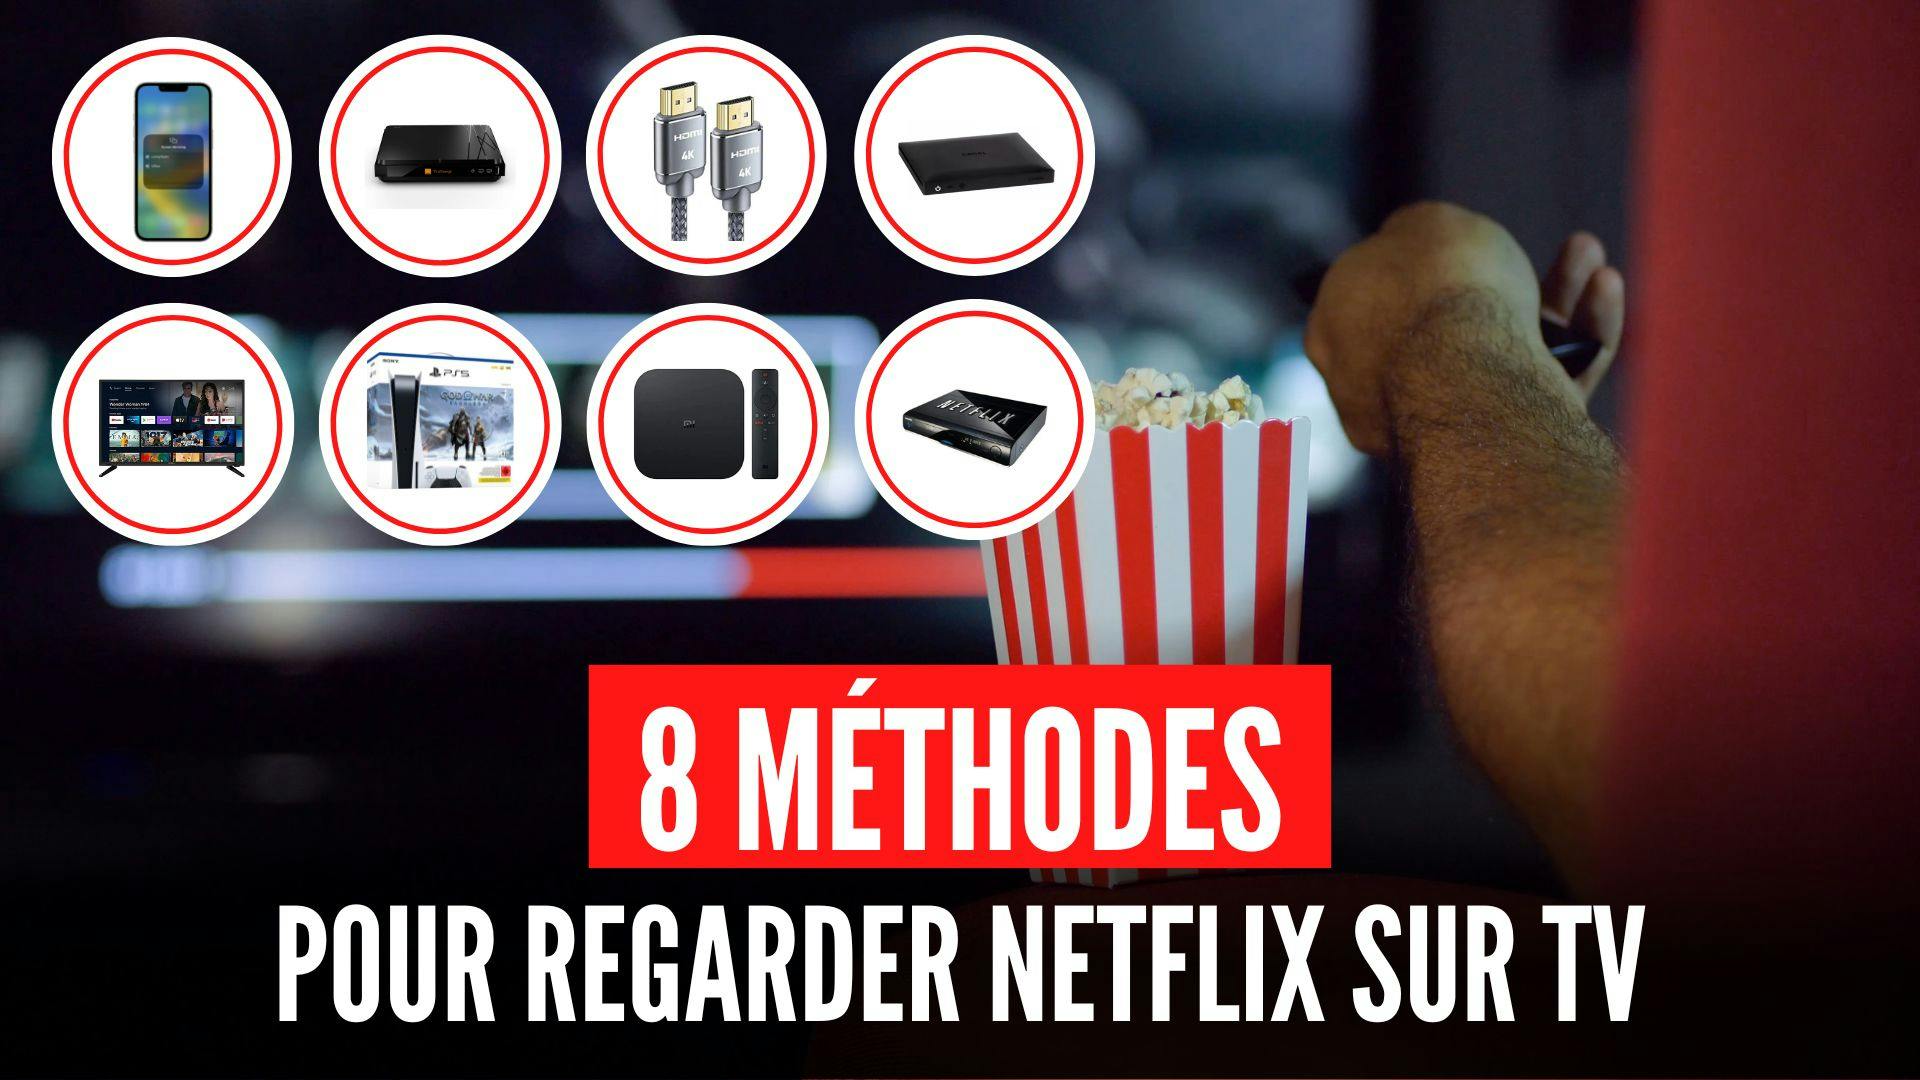 Présentation visuelle des 8 méthodes pour regarder Netflix sur la télévision